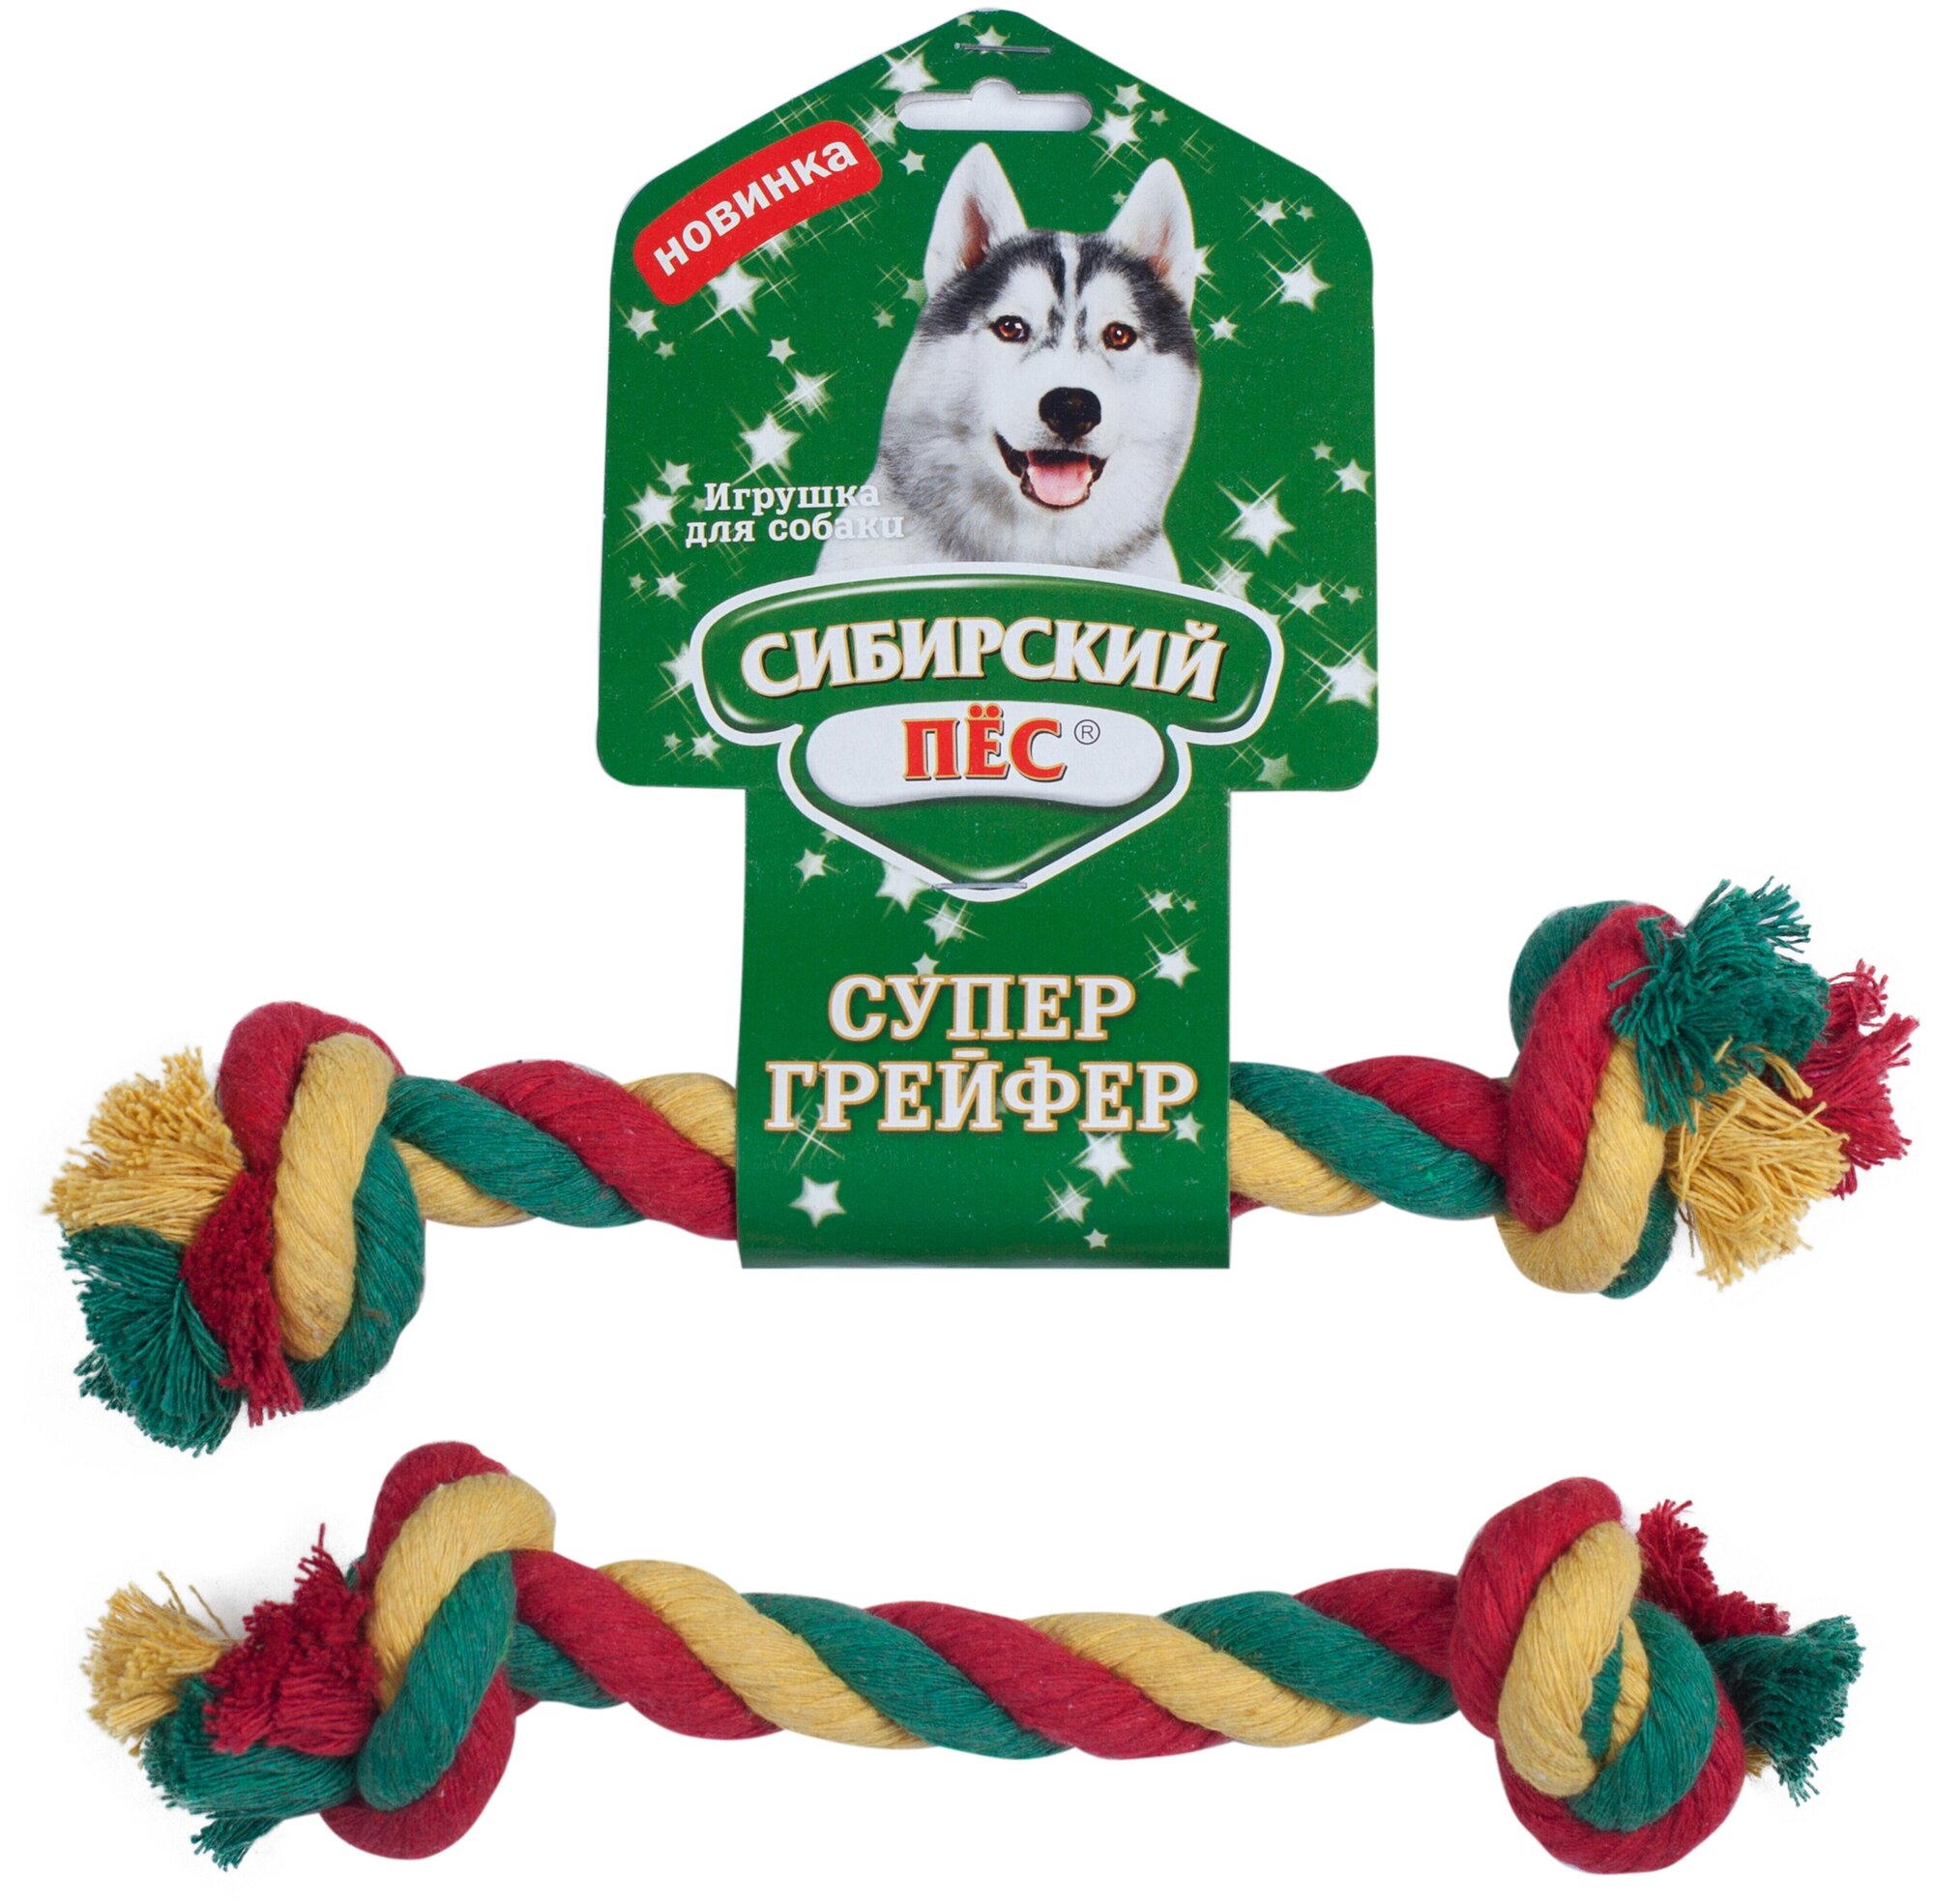 Игрушка для собак сибирский ПЕС Супер грейфер Веревка с 2-мя узлами для ухода за зубами, цветная (26*22 мм)